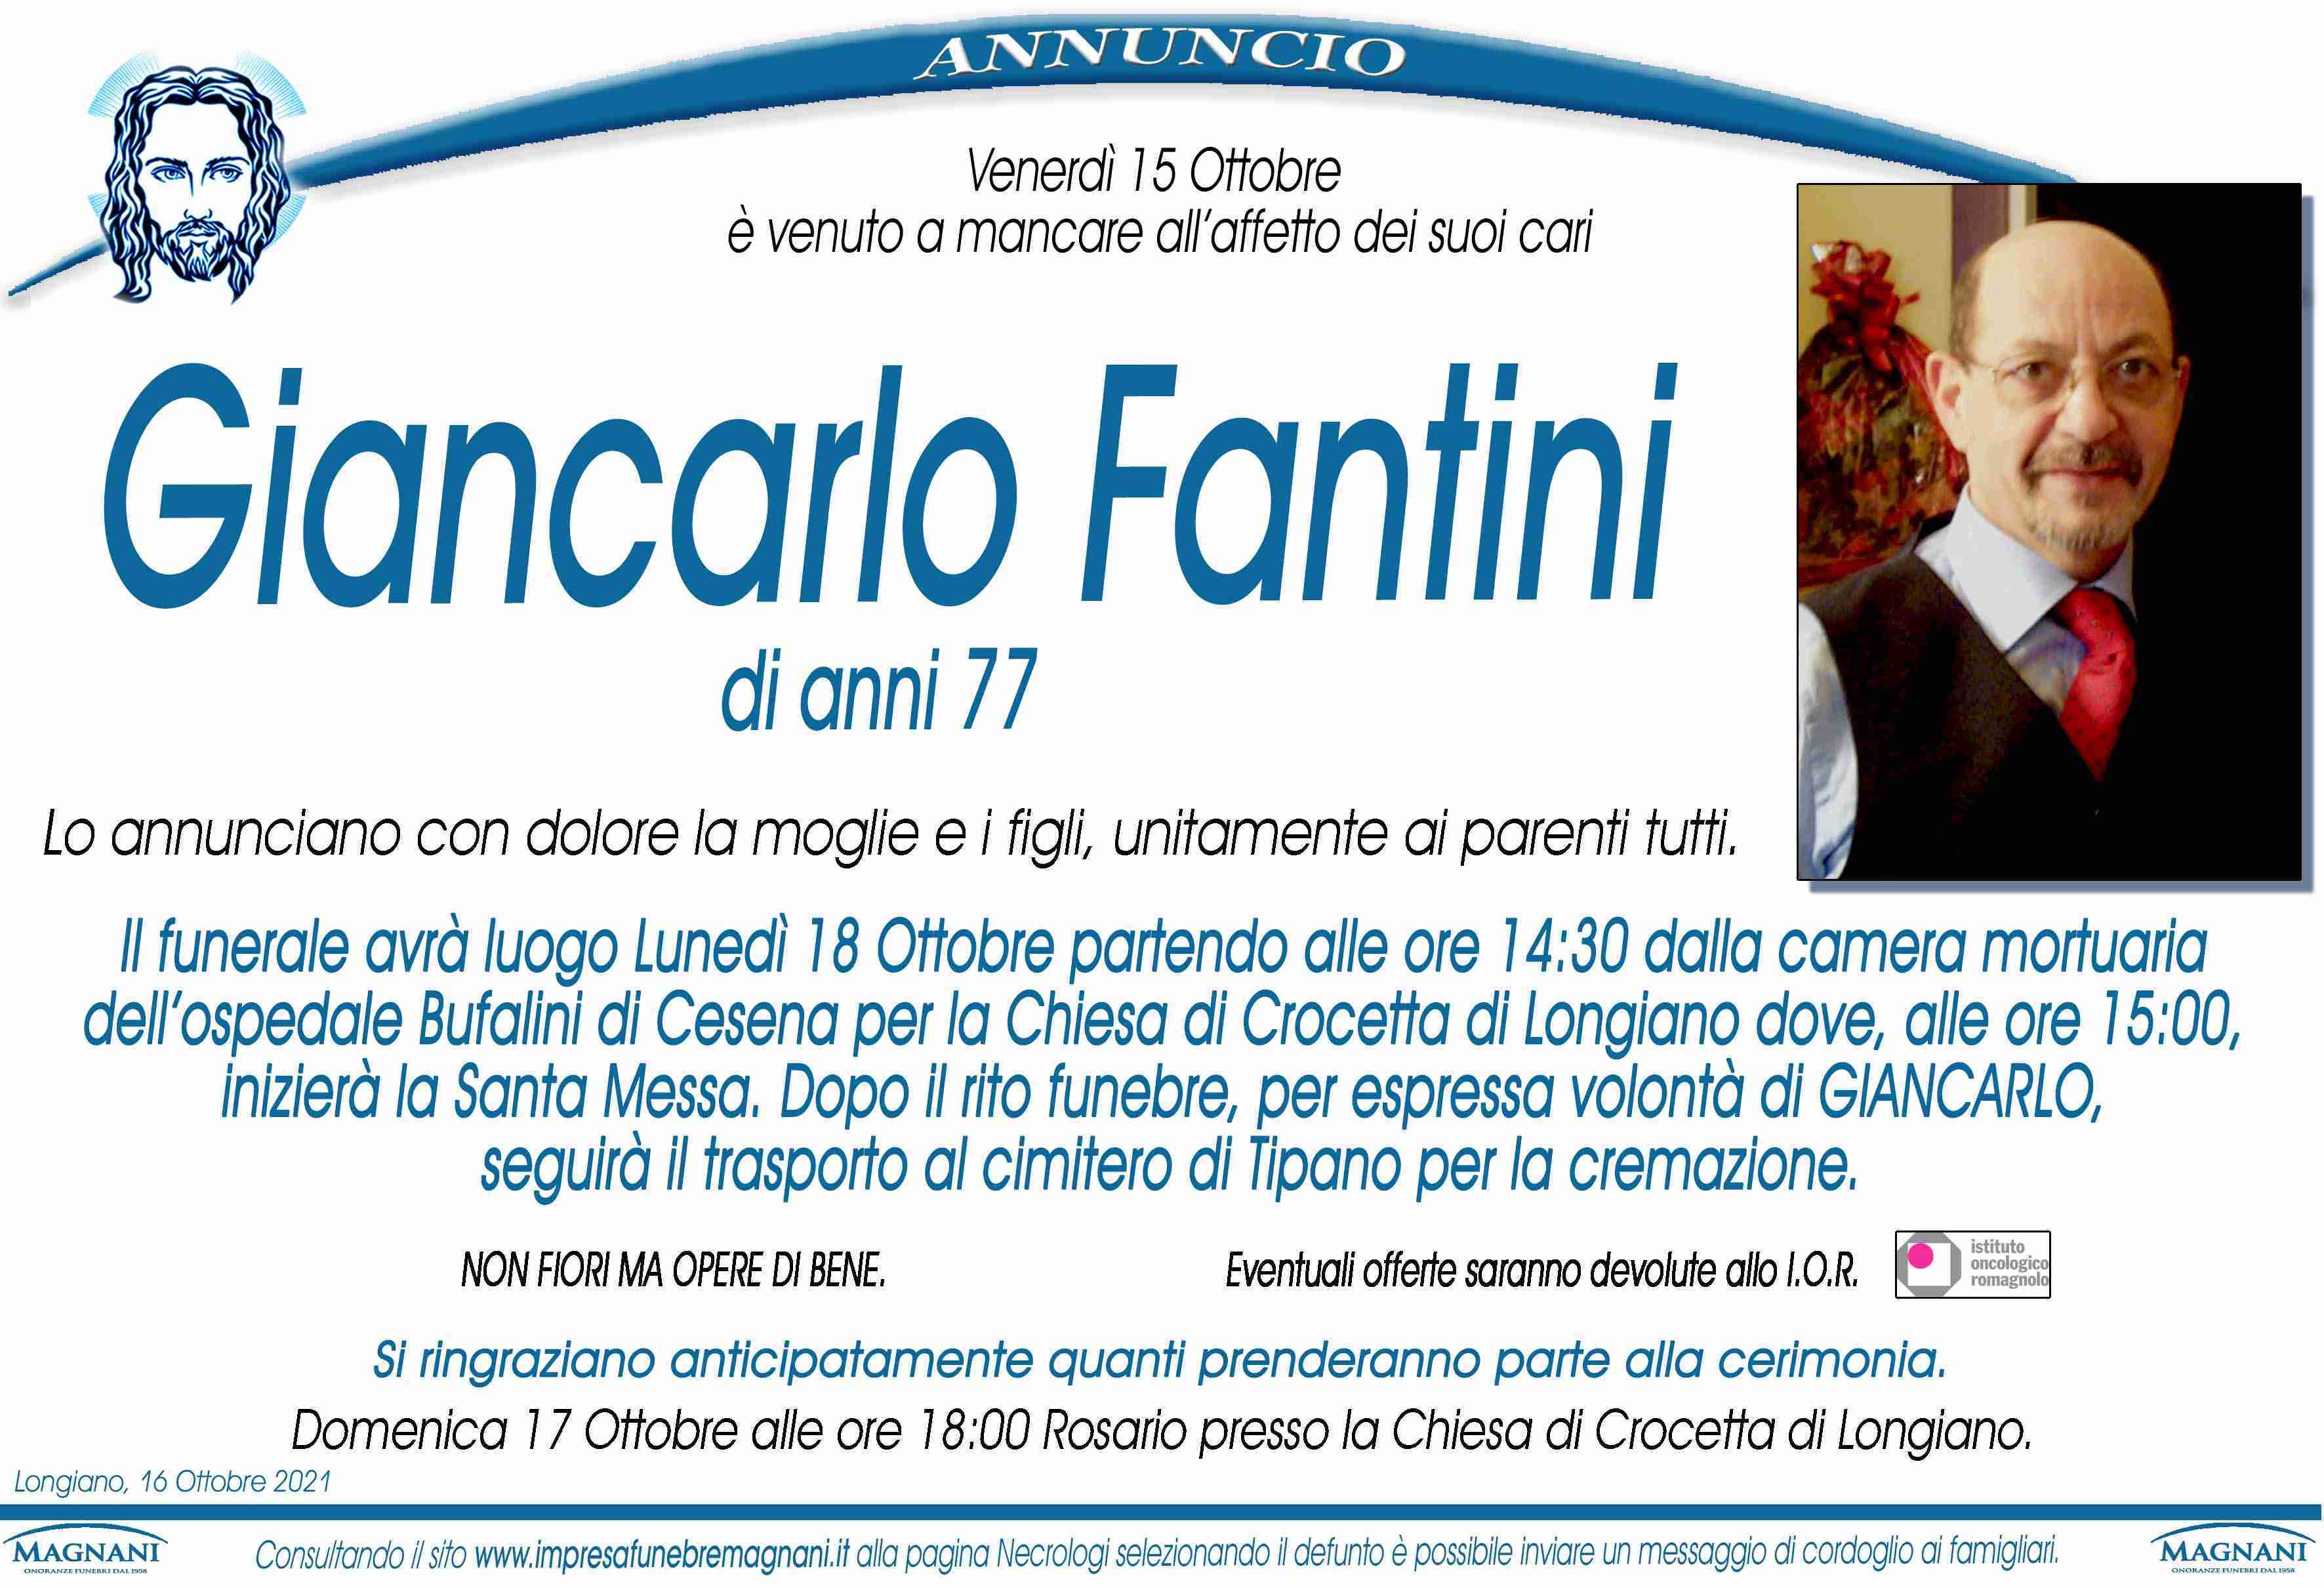 Giancarlo Fantini